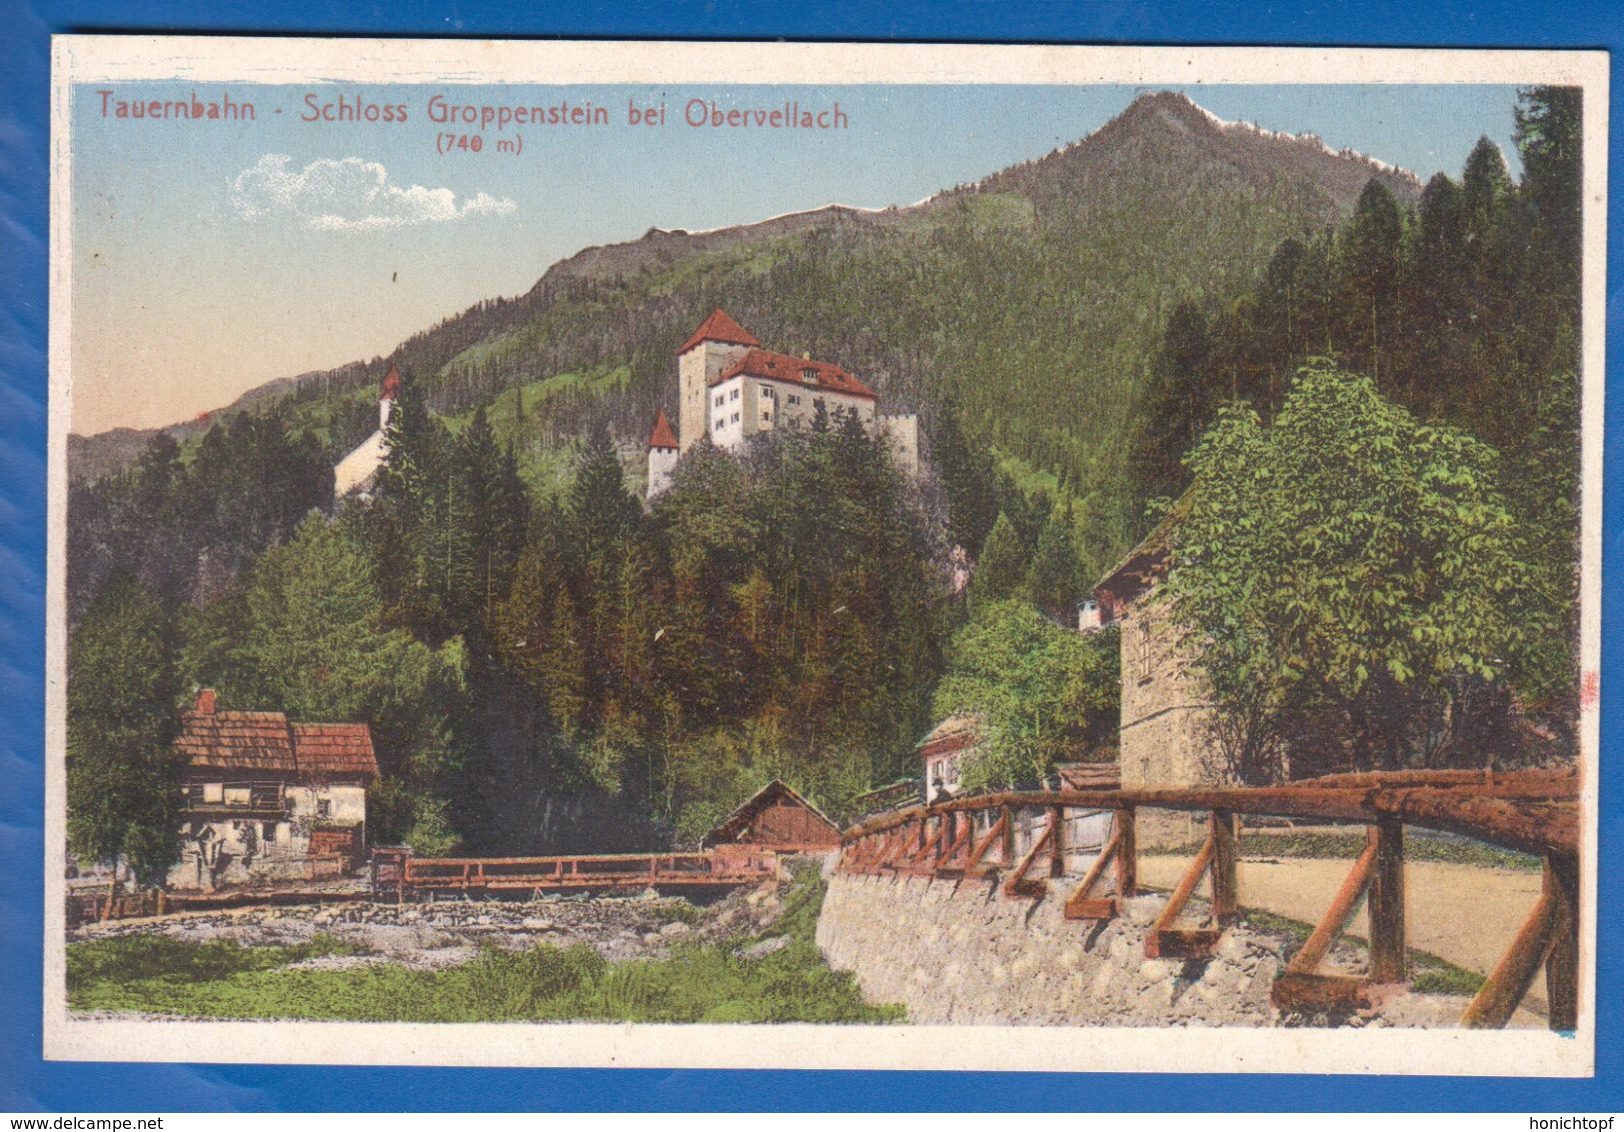 Österreich; Obervellach; Schloss Groppenstein; Tauernbahn; 1911 - Obervellach